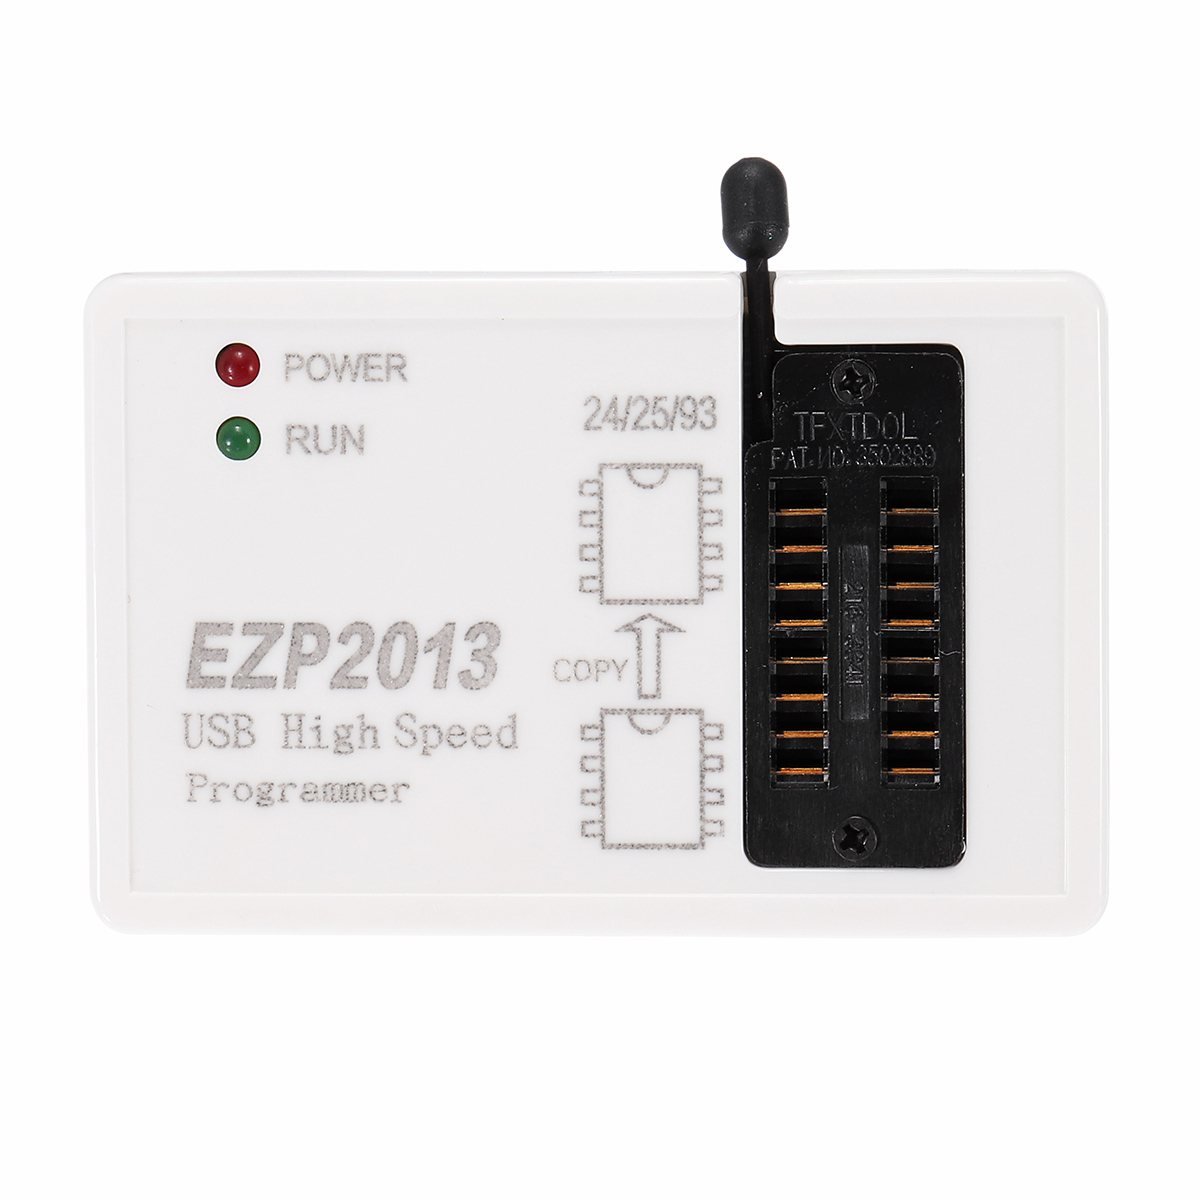 

EZP2013 High-speed USB SPI Programmer Better than EZP2010 Support 32M Flash 24 25 93 EEPROM 25 flash bios WIN7 WIN8 VISTA